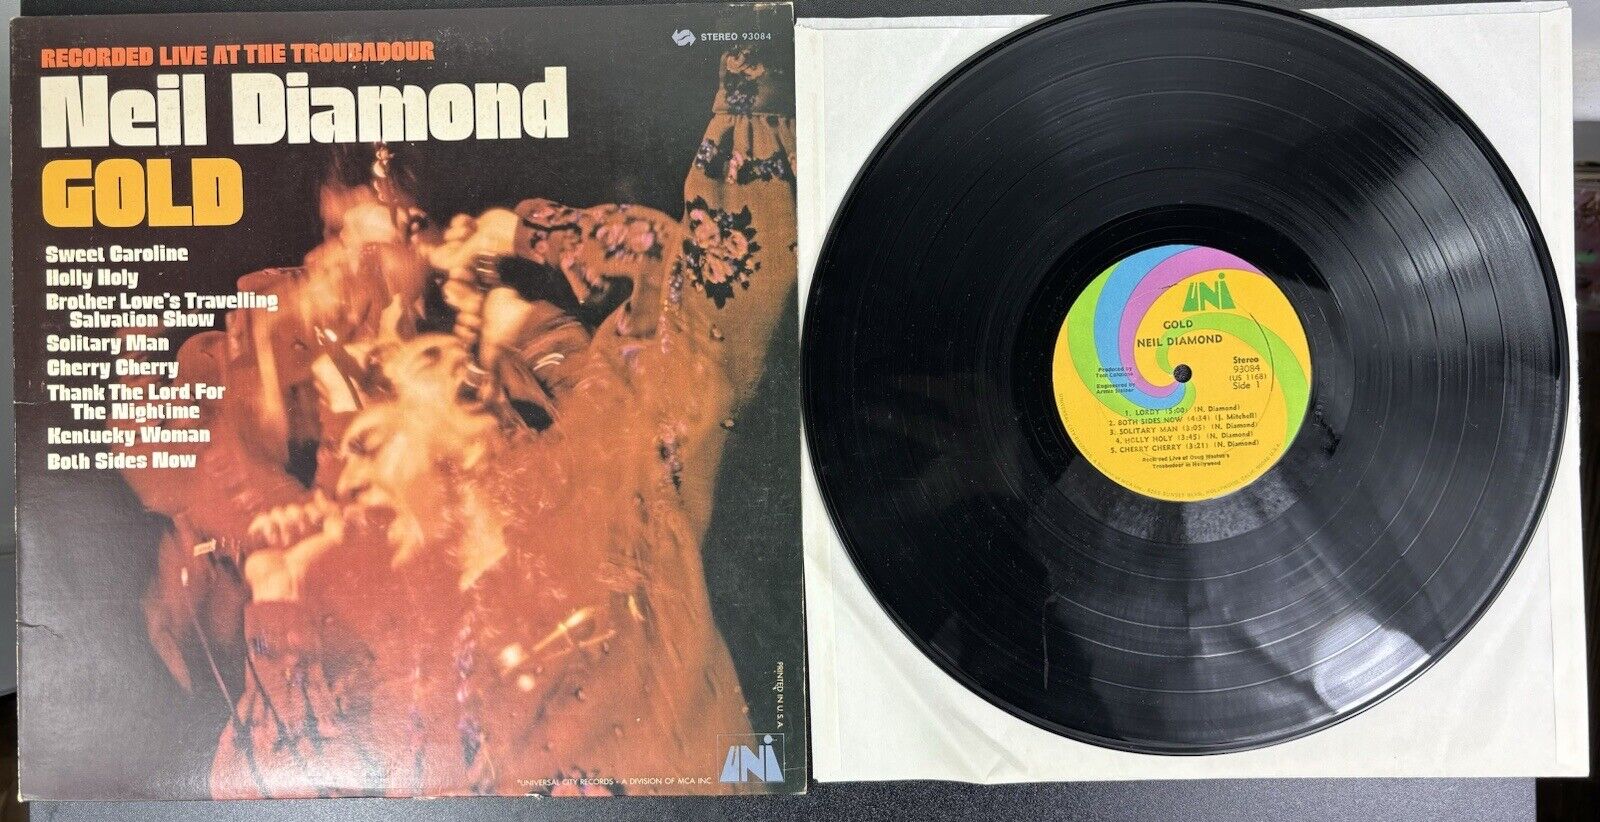 Neil Diamond Gold - Live At The Troubadour - Original 1970 Vinyl LP 93084